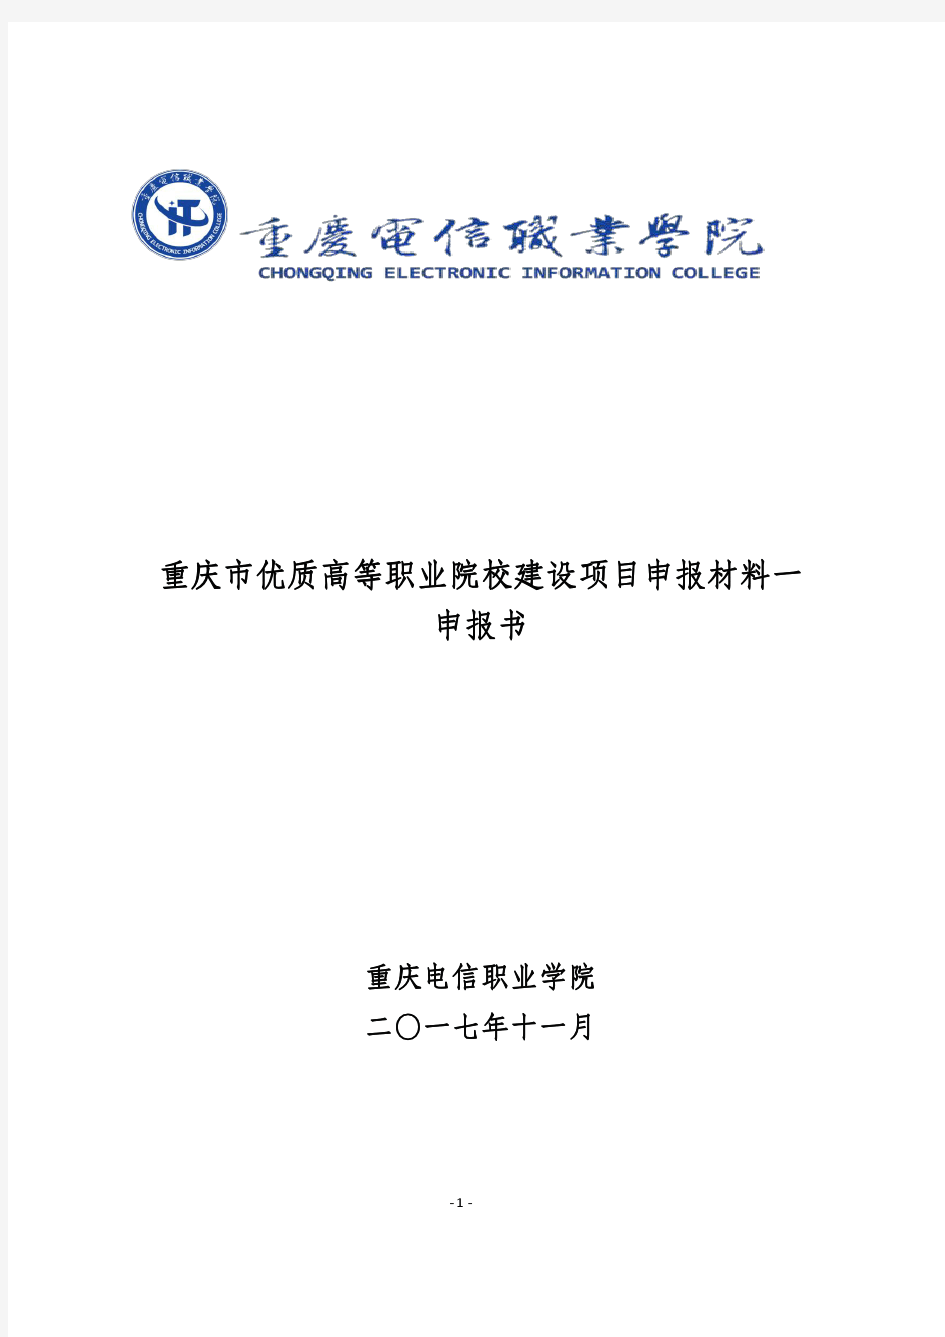 重庆优质高等职业院校建设项目申报材料一申报书-重庆电信职业学院